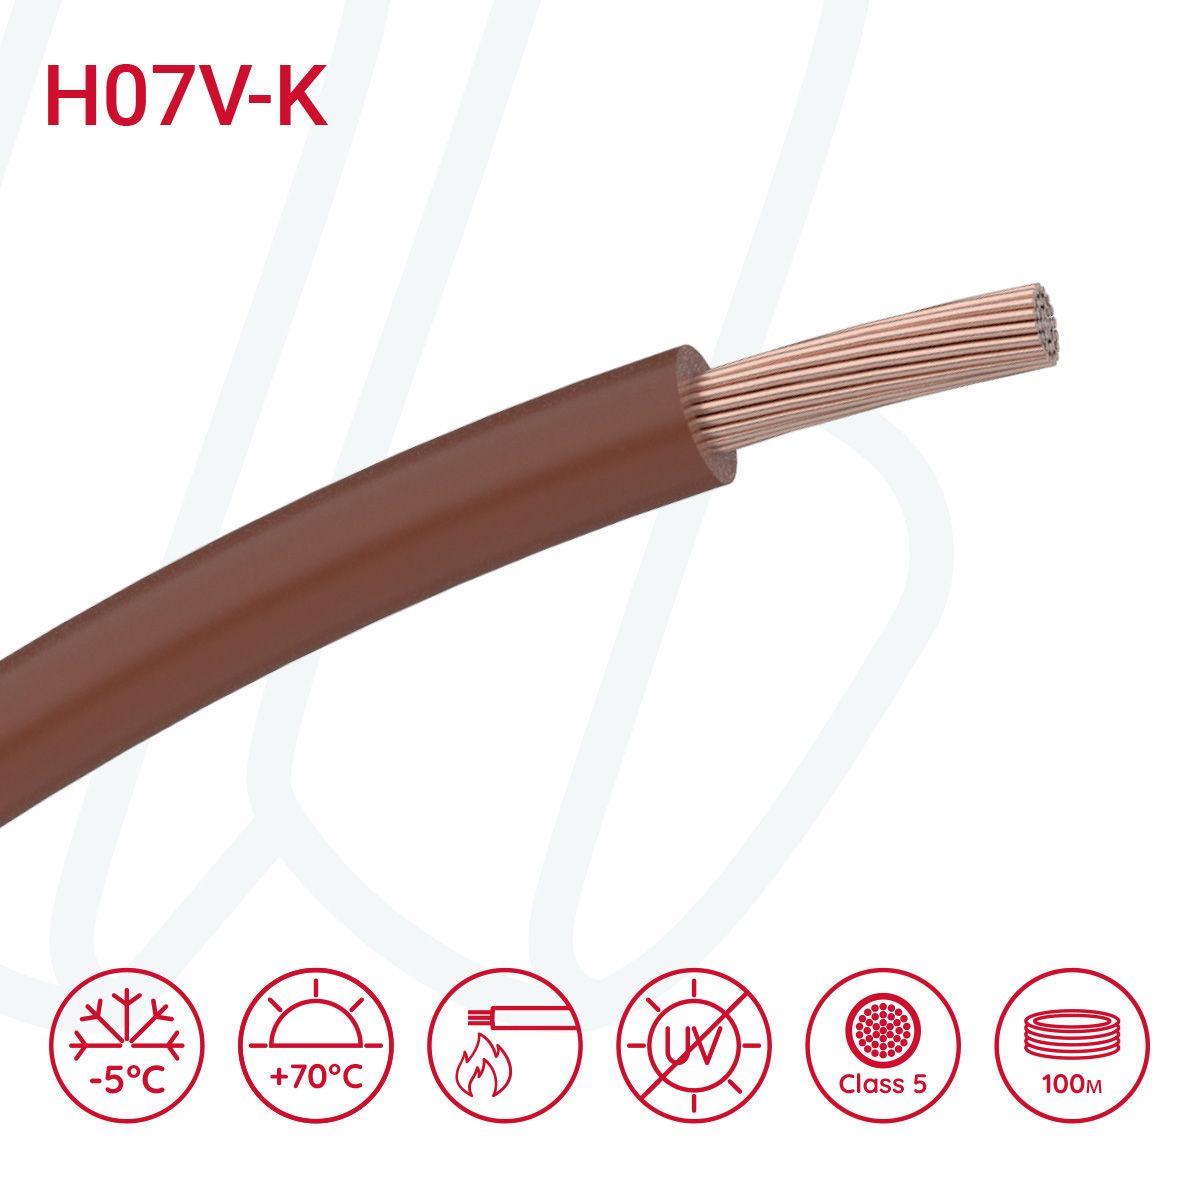 Провід монтажний гнучкий H07V-K 6 мм² коричневий, 01, 6